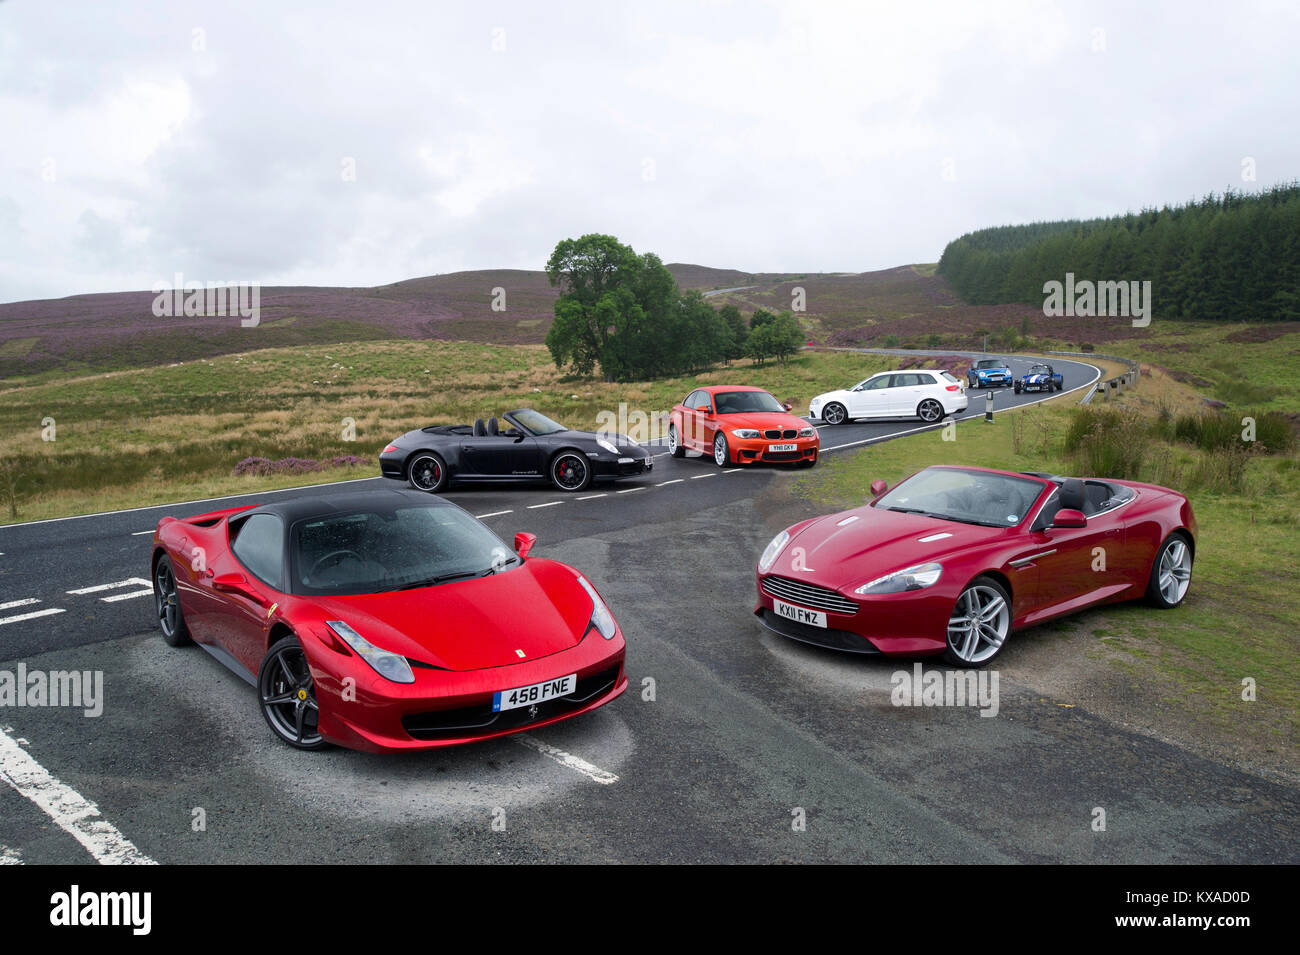 Groupe des voitures de sport exotiques et passionnantes-Ferrari 458, Aston Martin DB9, Porsche 911 GTS, BMW 1M, Audi RS3, Mini Cooper, Caterham 7 Banque D'Images